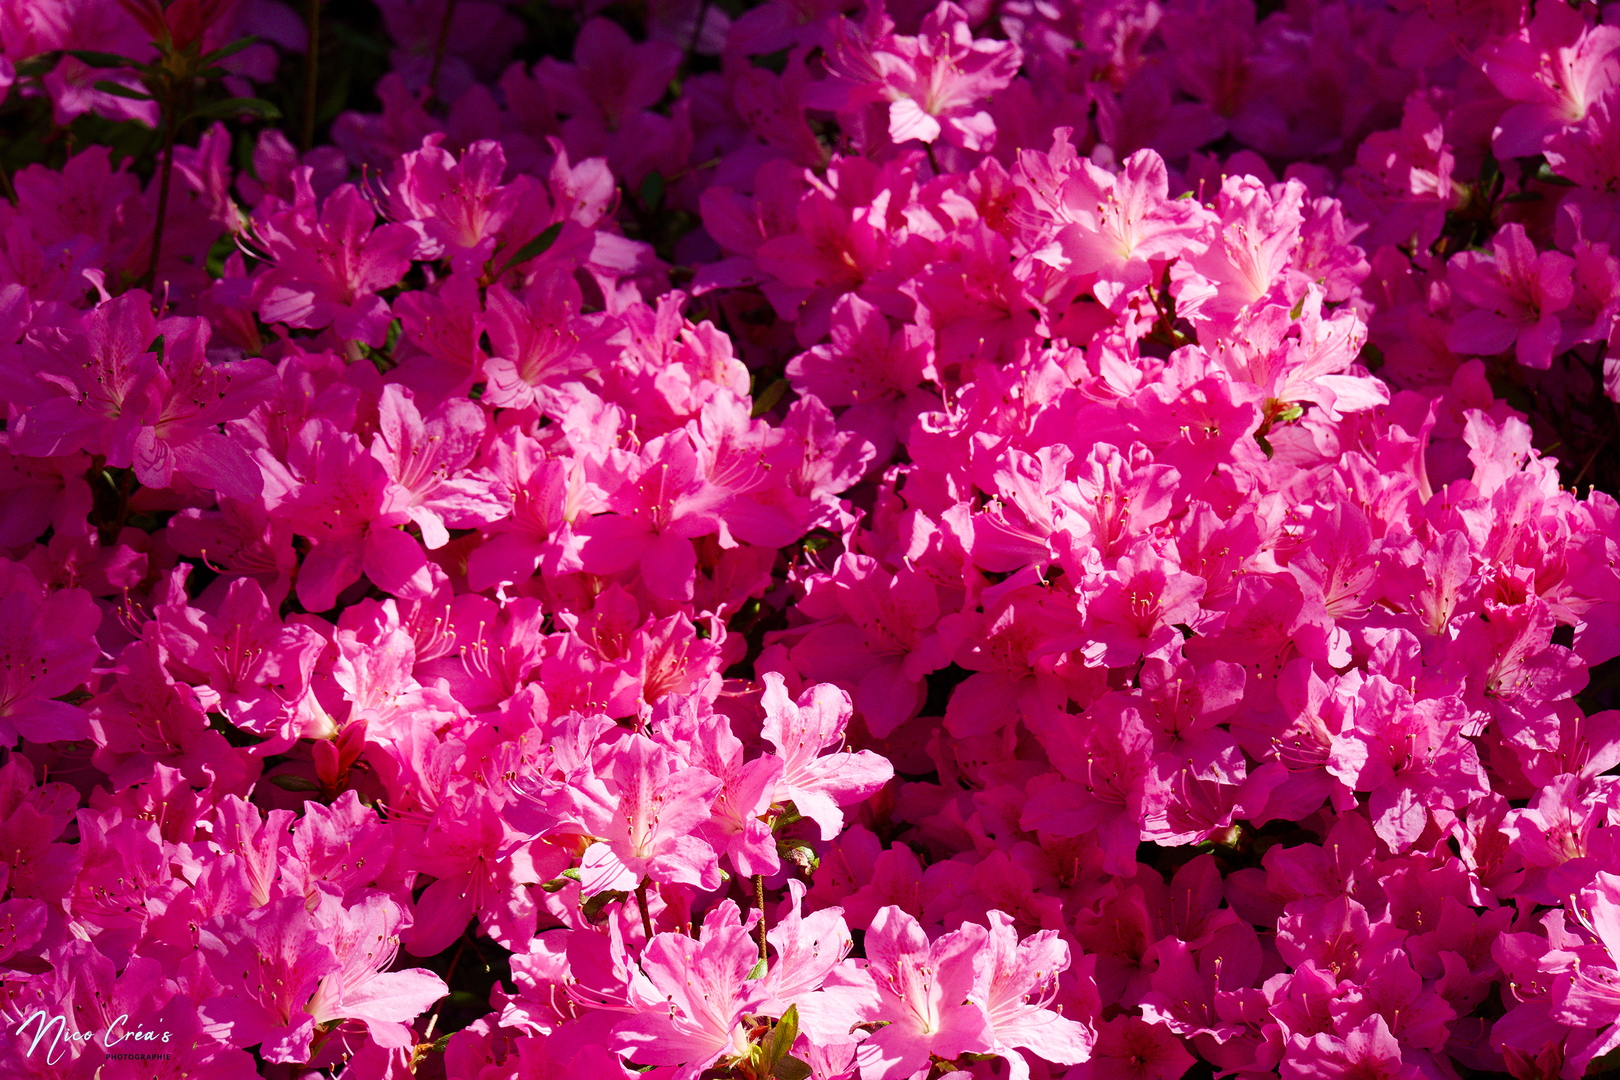 Rhododendron - _DSC8348_DxO copie.jpg